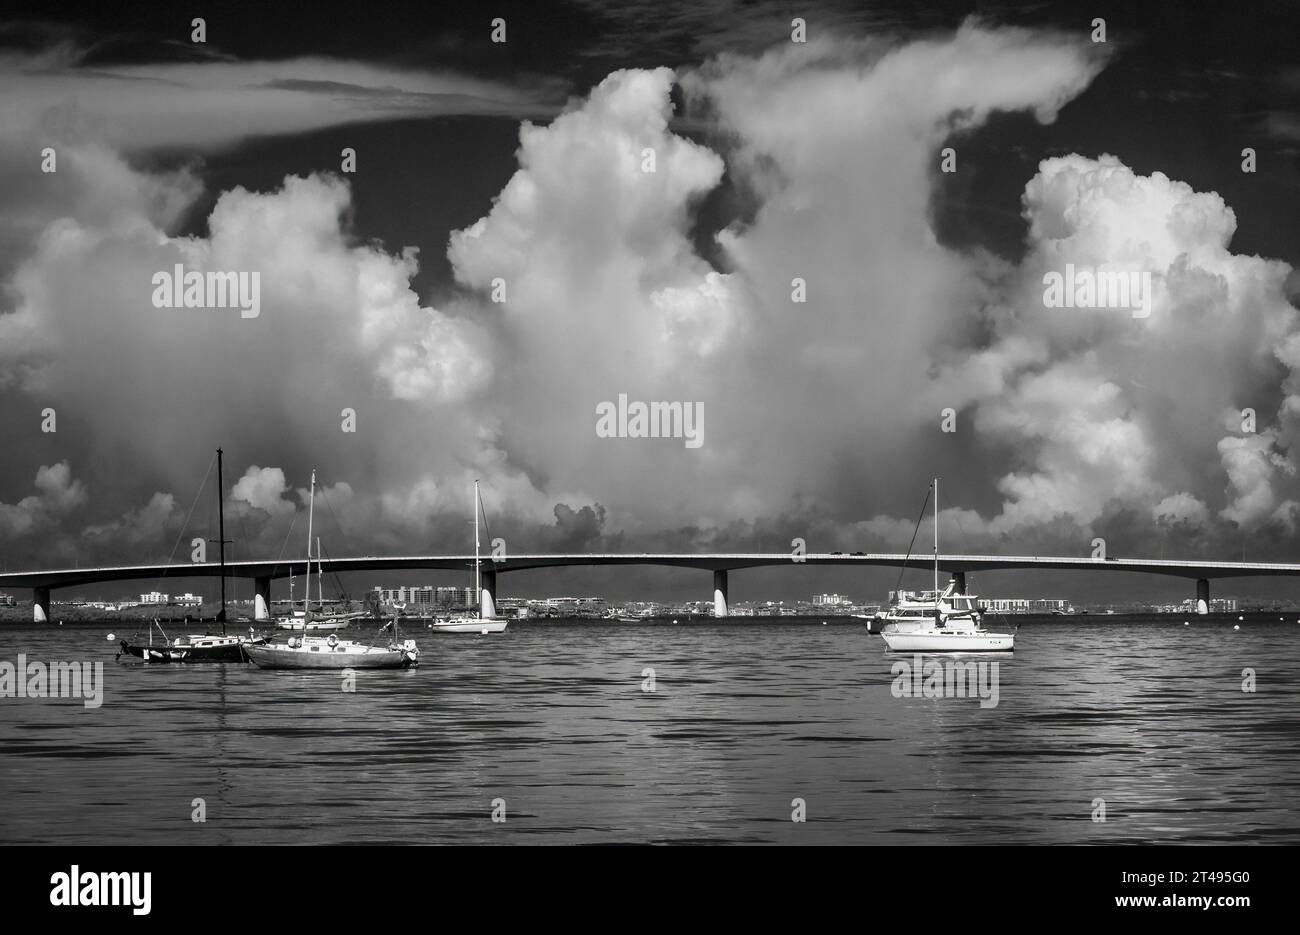 Immagine infrarossa rossa in bianco e nero delle barche nella baia di Sarasota con il ponte John Ringling Causeway in lontananza a Sarasota, Florida, USA Foto Stock